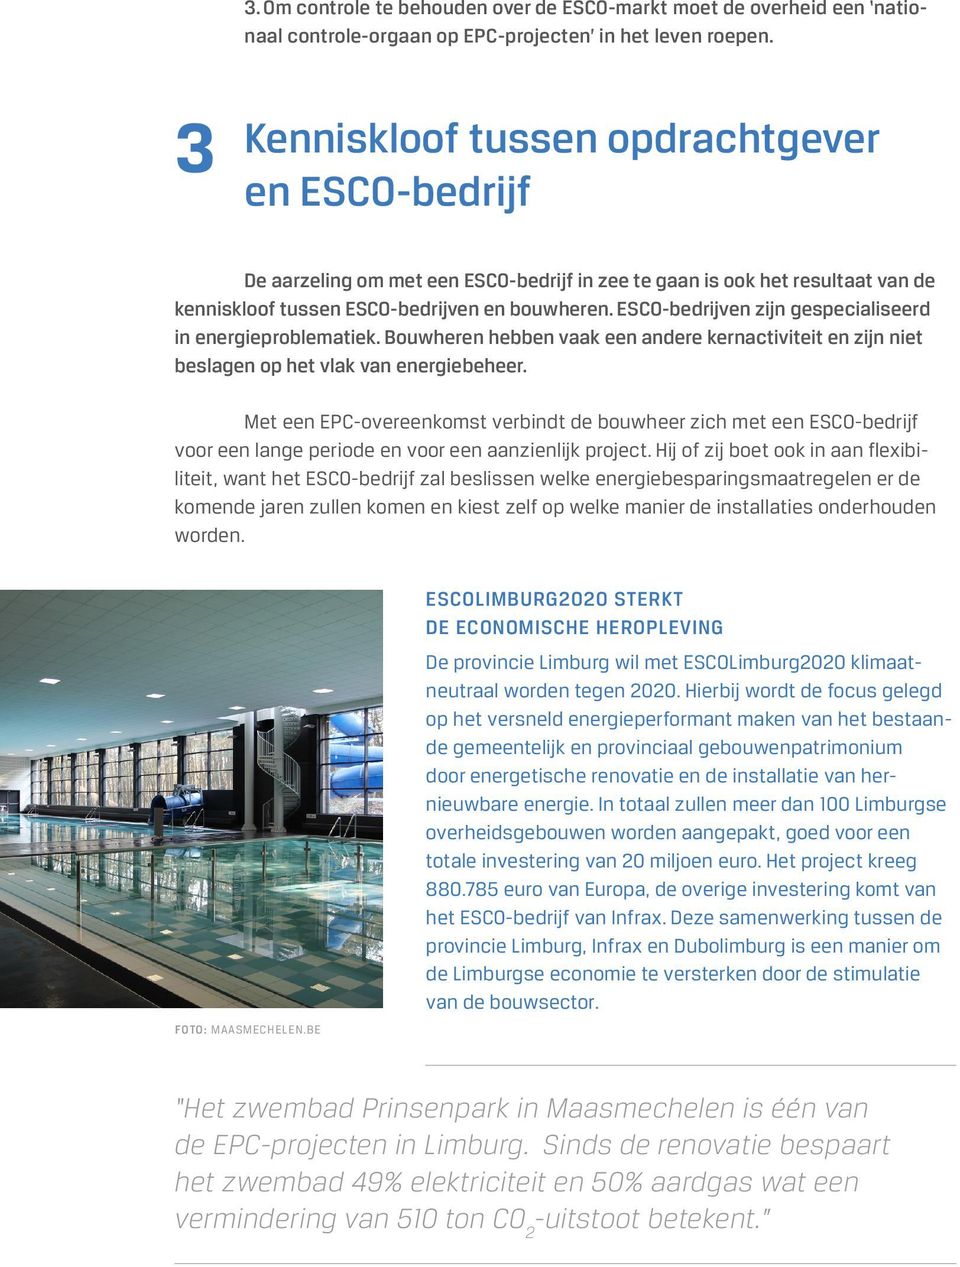 ESCO-bedrijven zijn gespecialiseerd in energieproblematiek. Bouwheren hebben vaak een andere kernactiviteit en zijn niet beslagen op het vlak van energiebeheer.